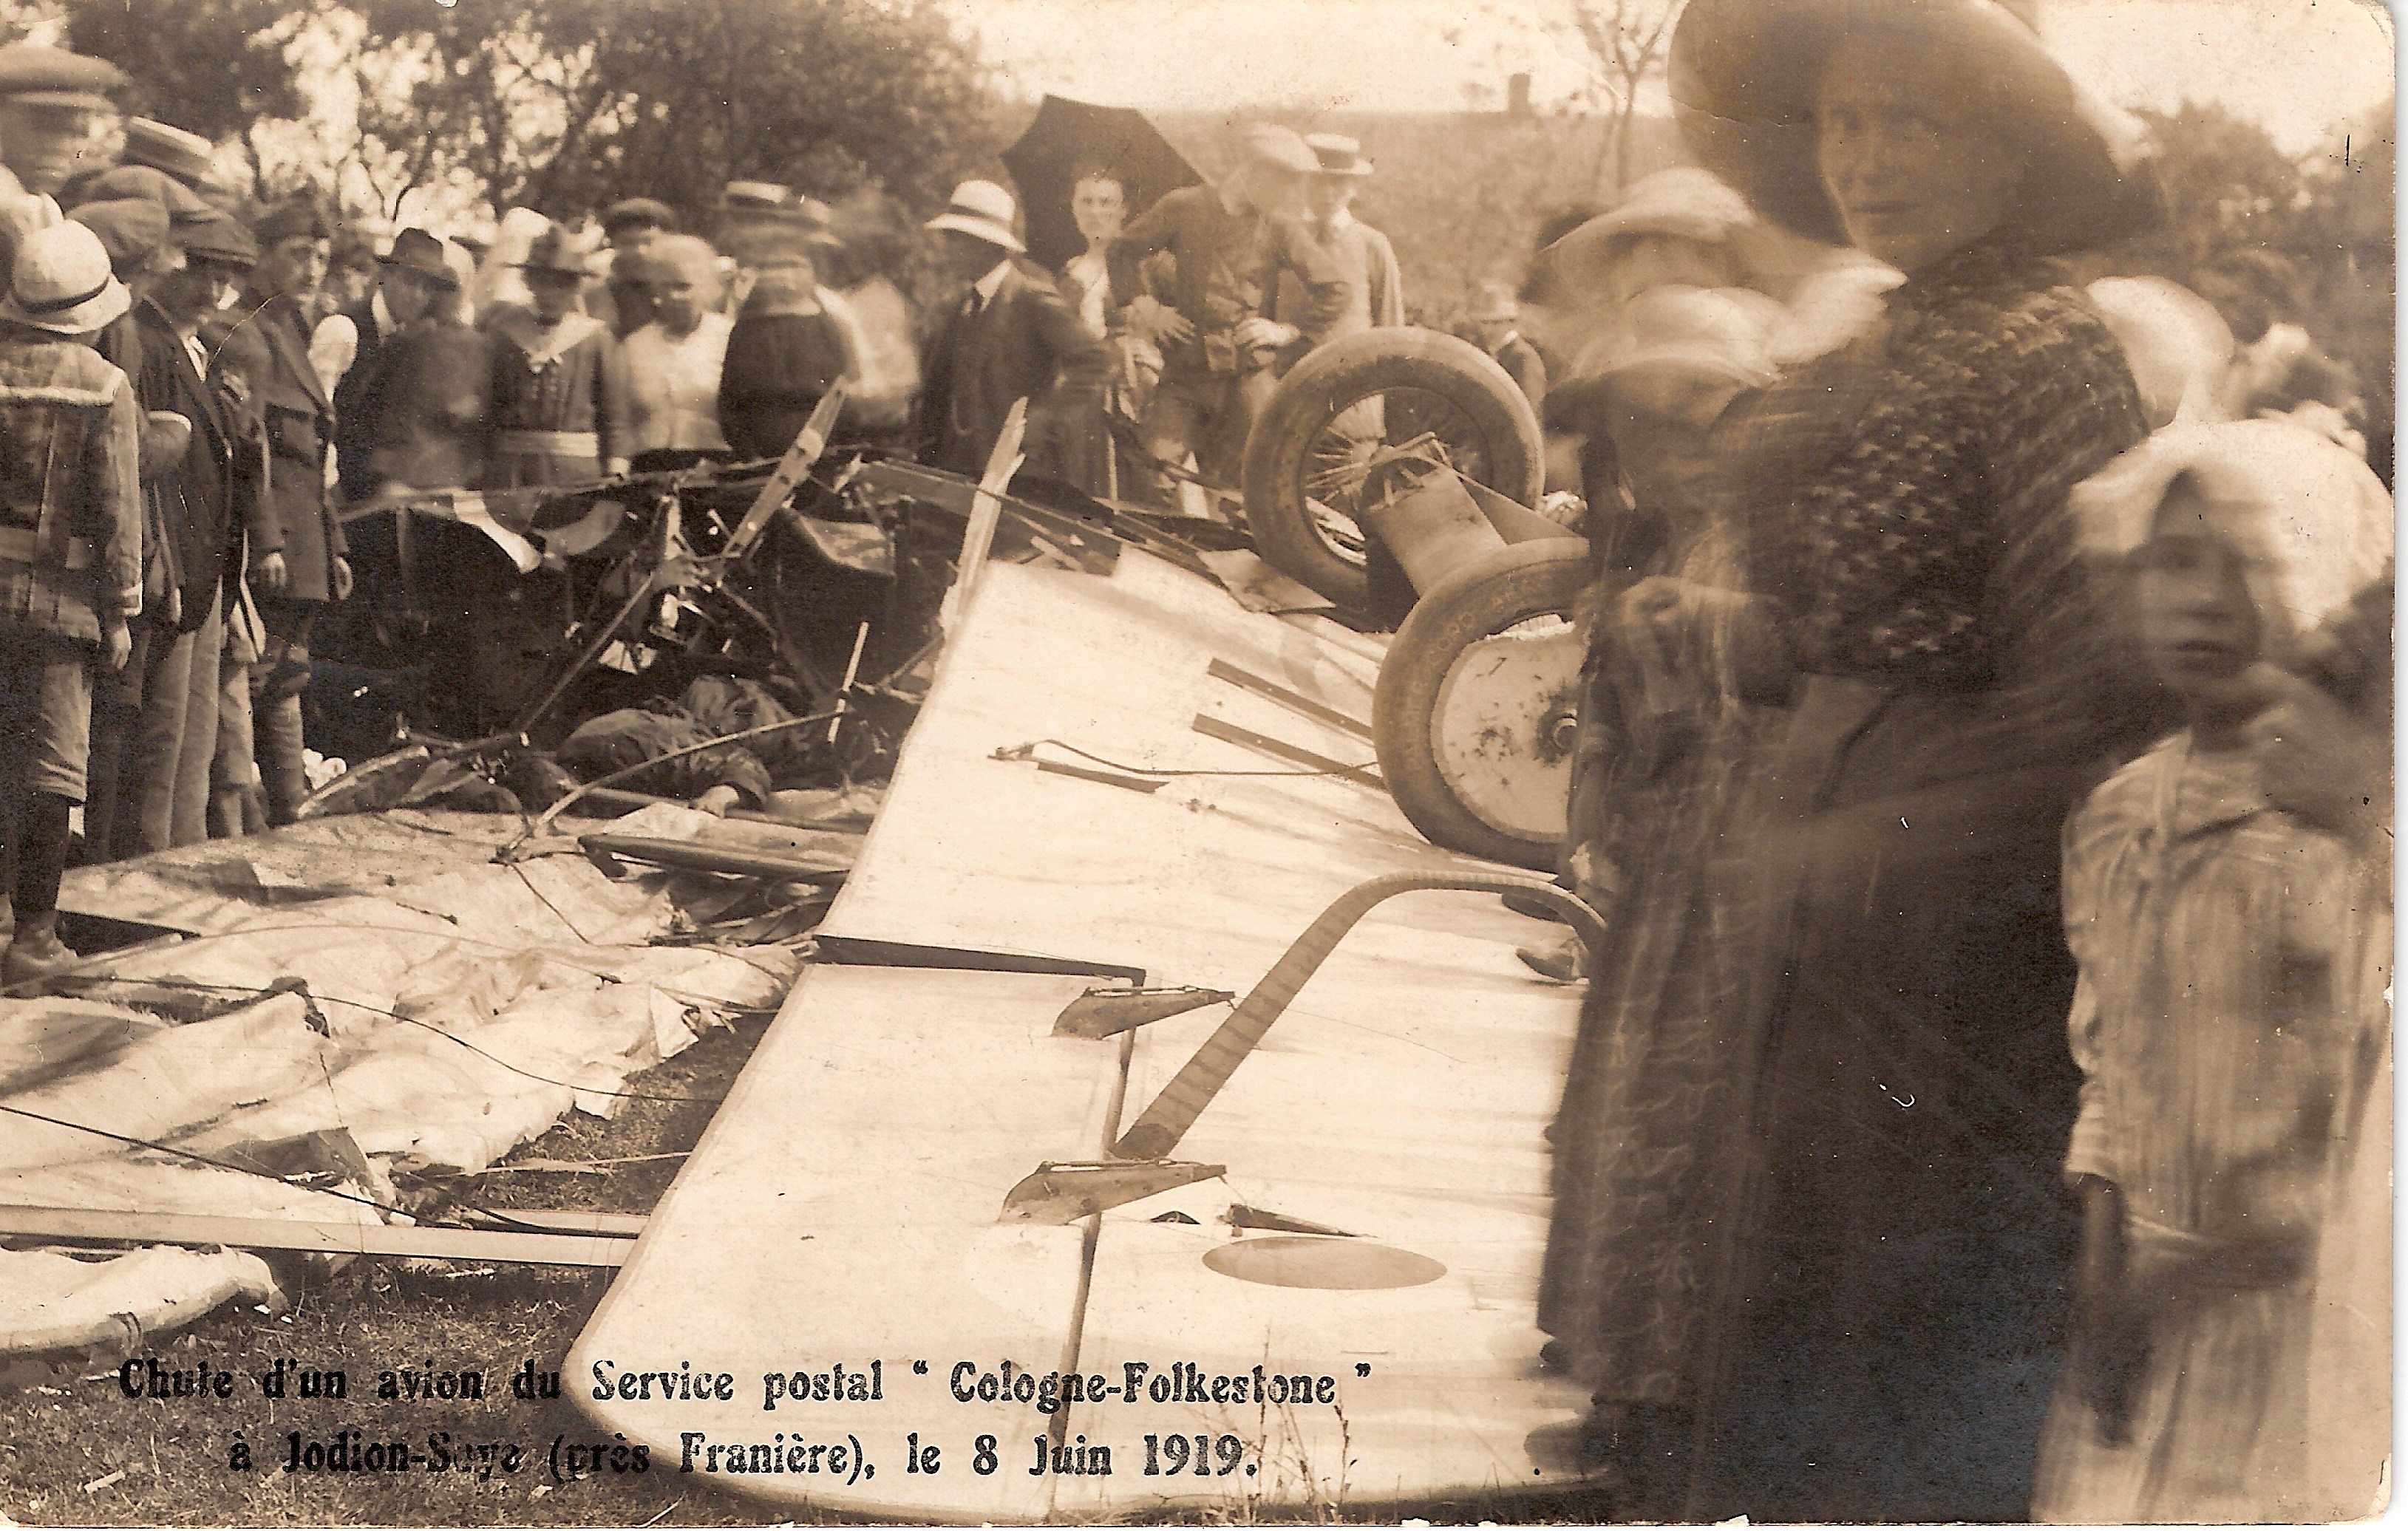 Chute d'un avion du service postal « Cologne - Folkestone » le 8 juin 1919